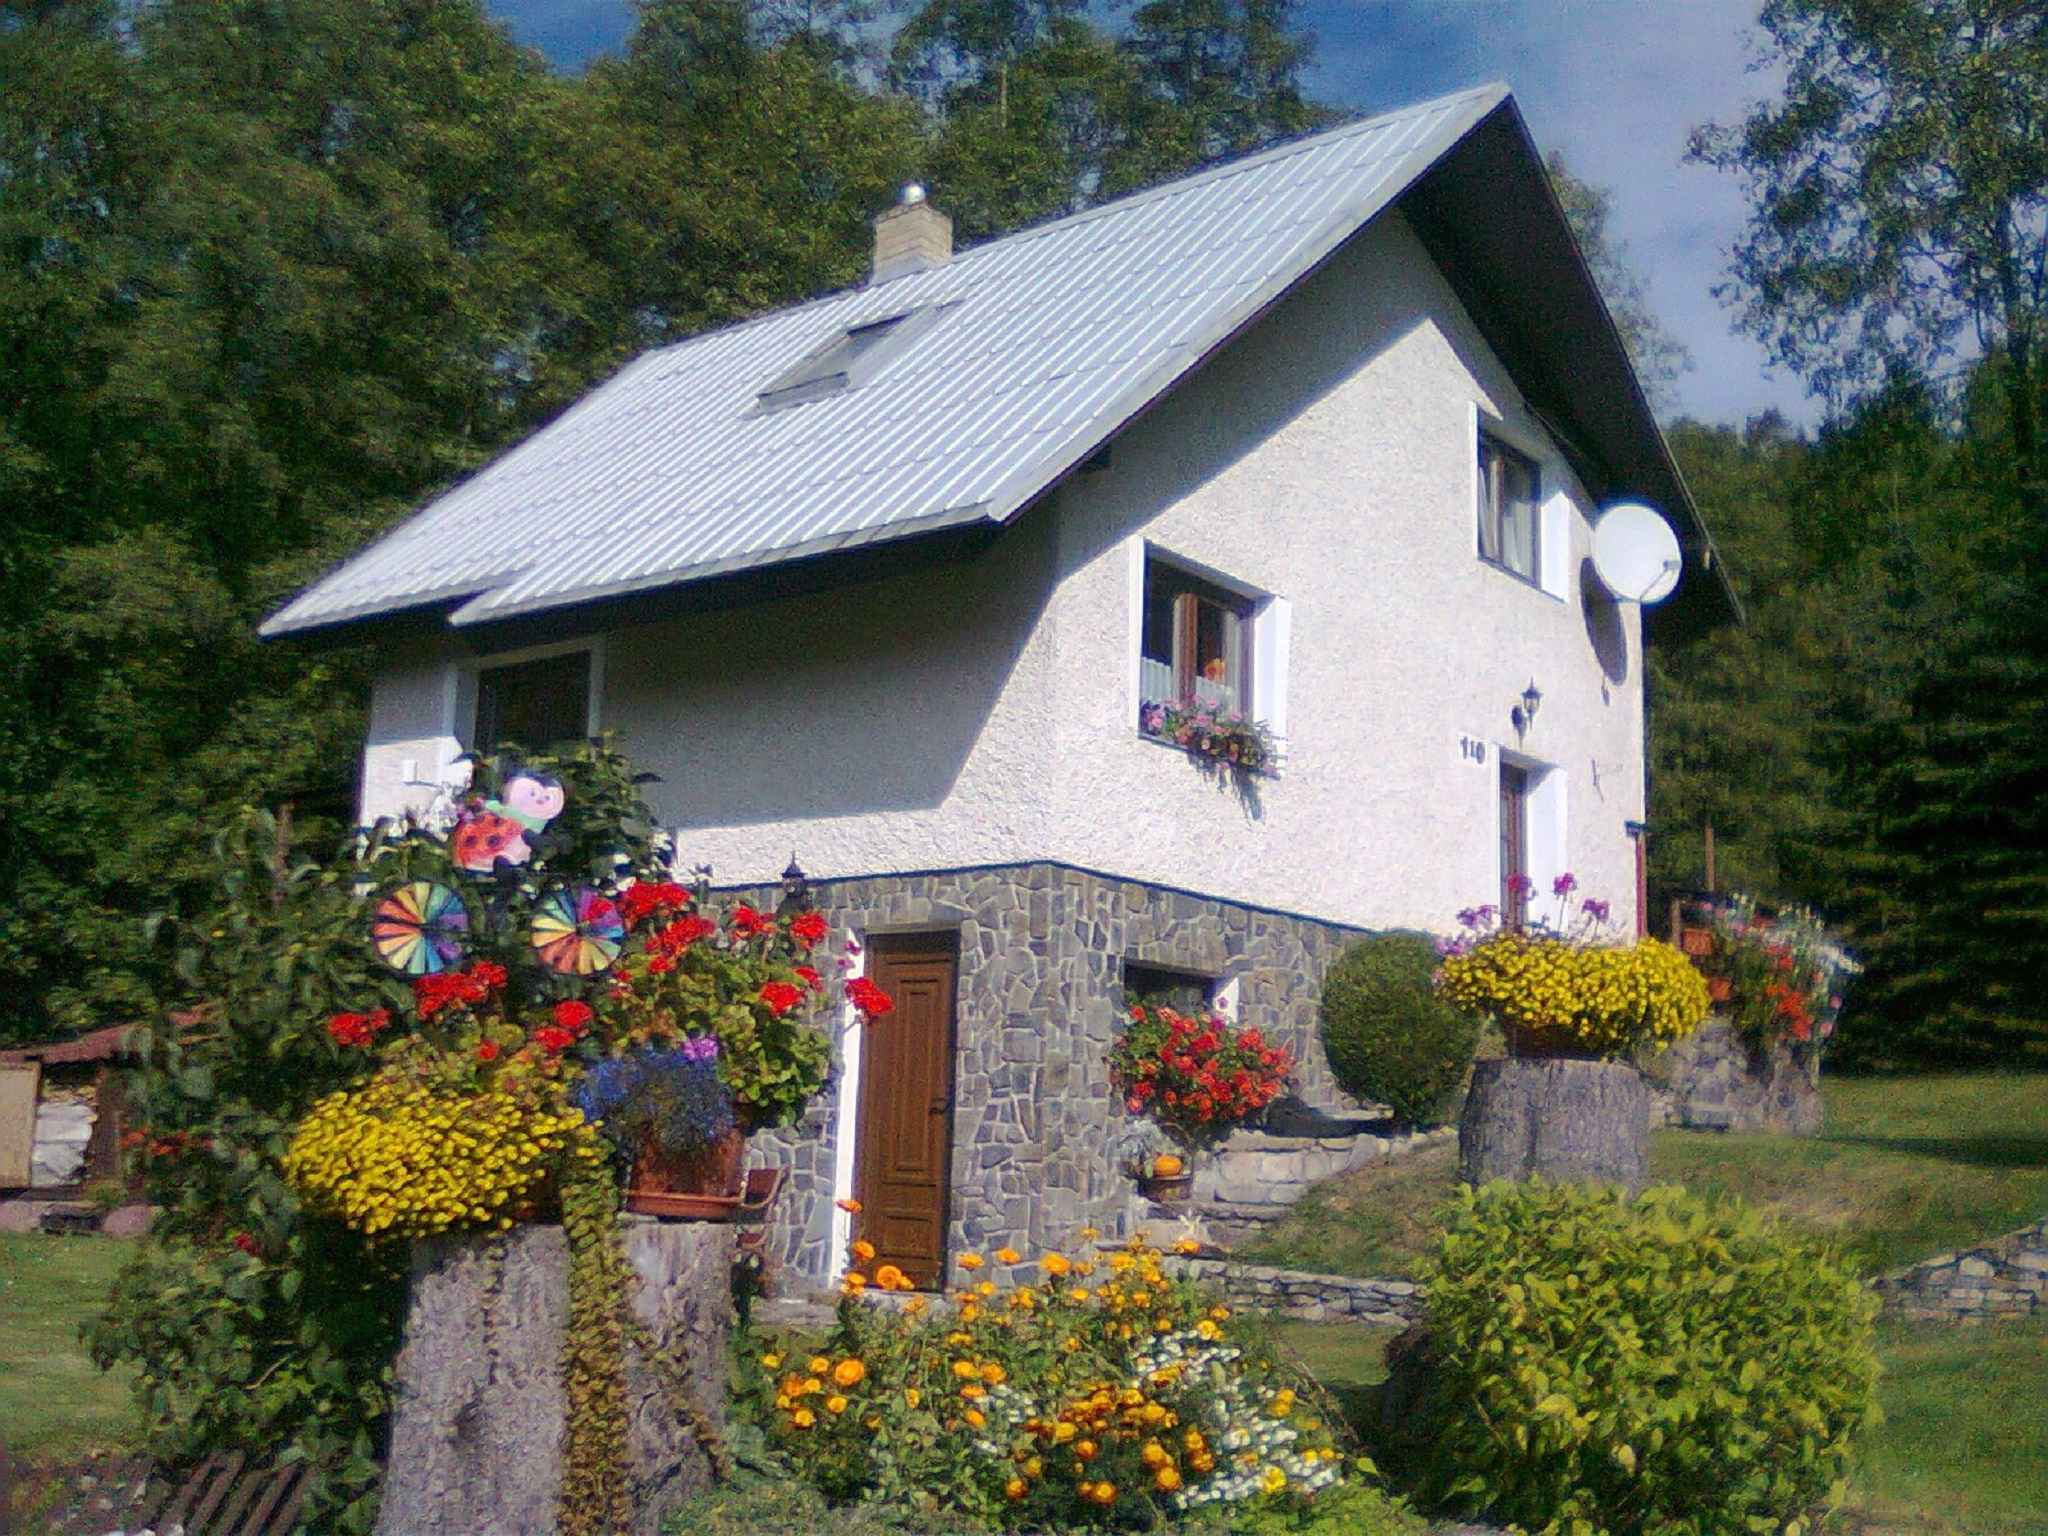 Berghütte im Wald mit Hinterteil Ferienhaus in Europa